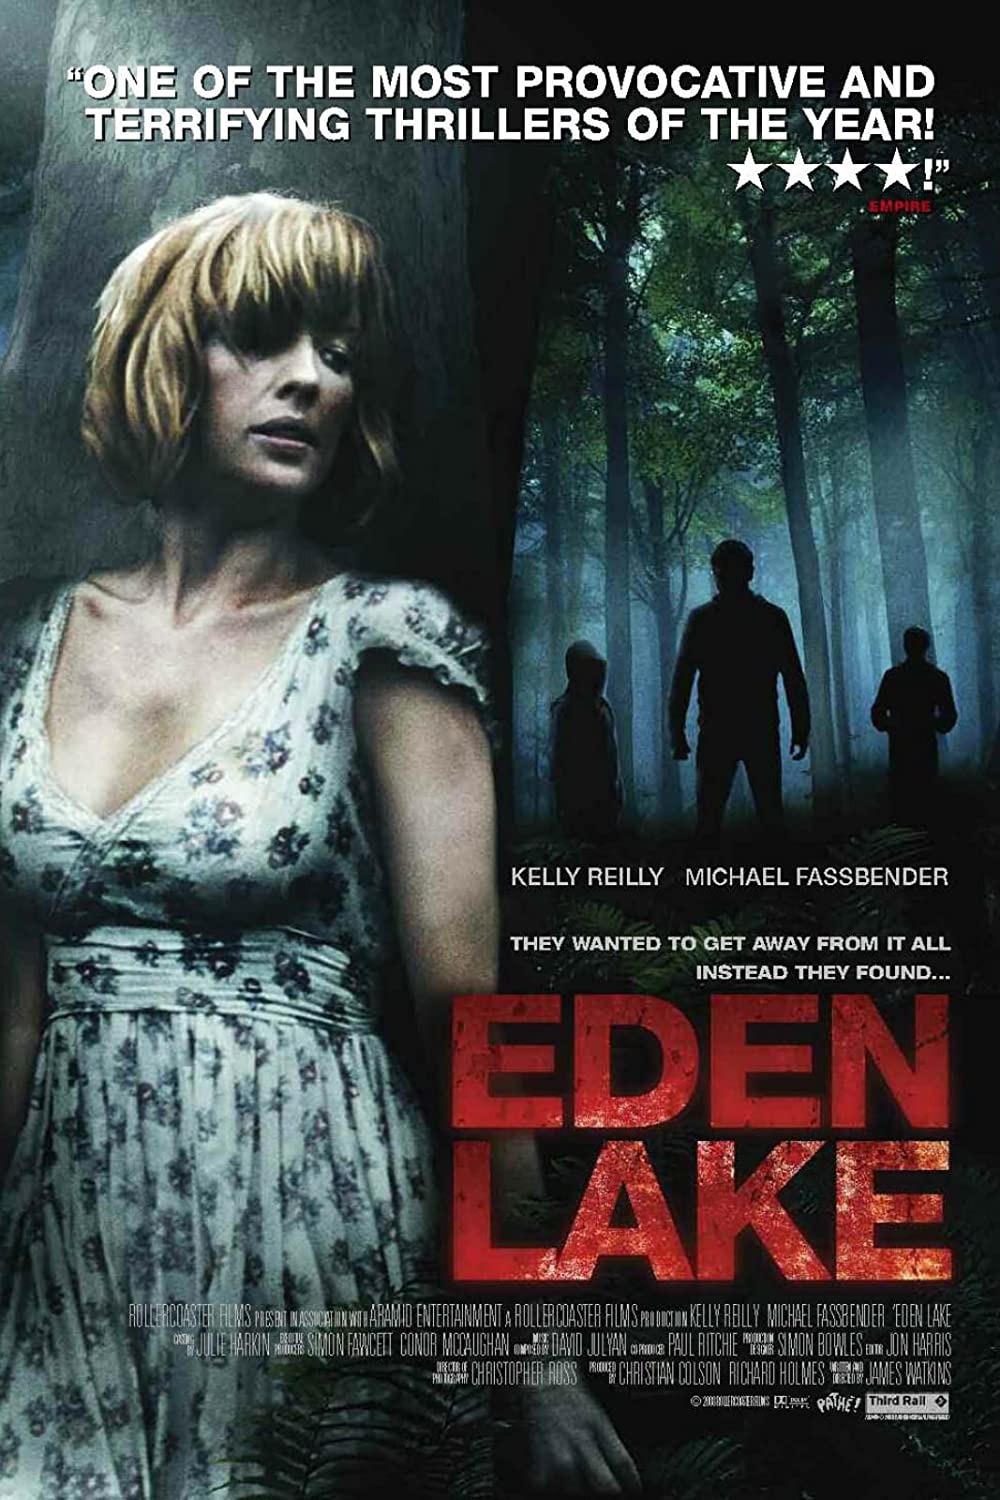 Filmbeschreibung zu Eden Lake